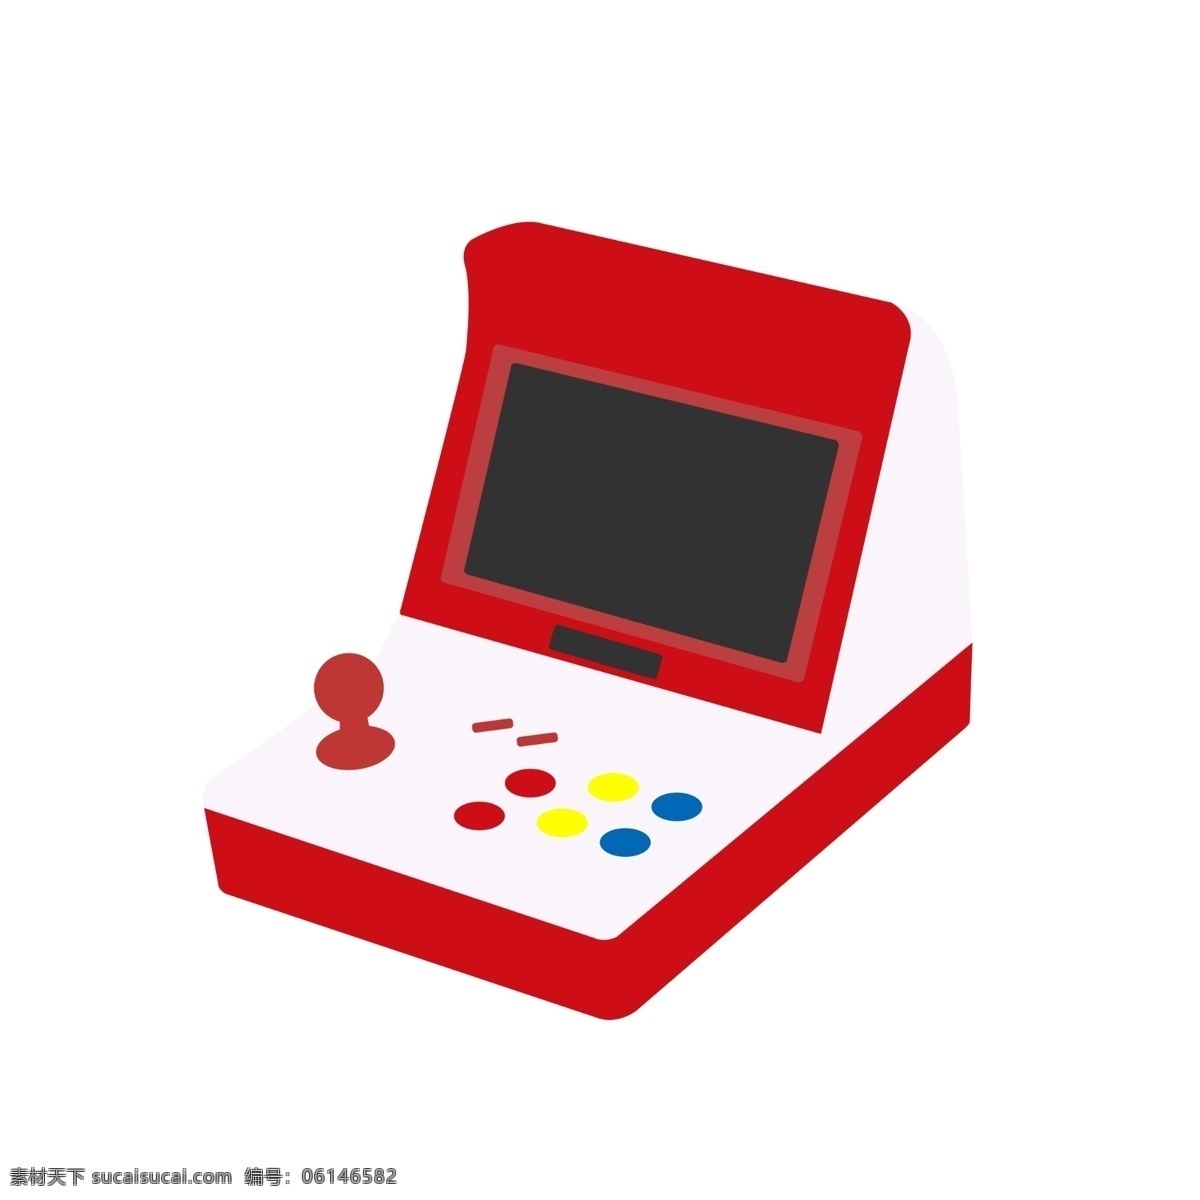 游戏厅 游戏机 插画 红色的游戏机 卡通插画 游戏插画 娱乐游戏 应用游戏 智能游戏 游戏厅游戏机